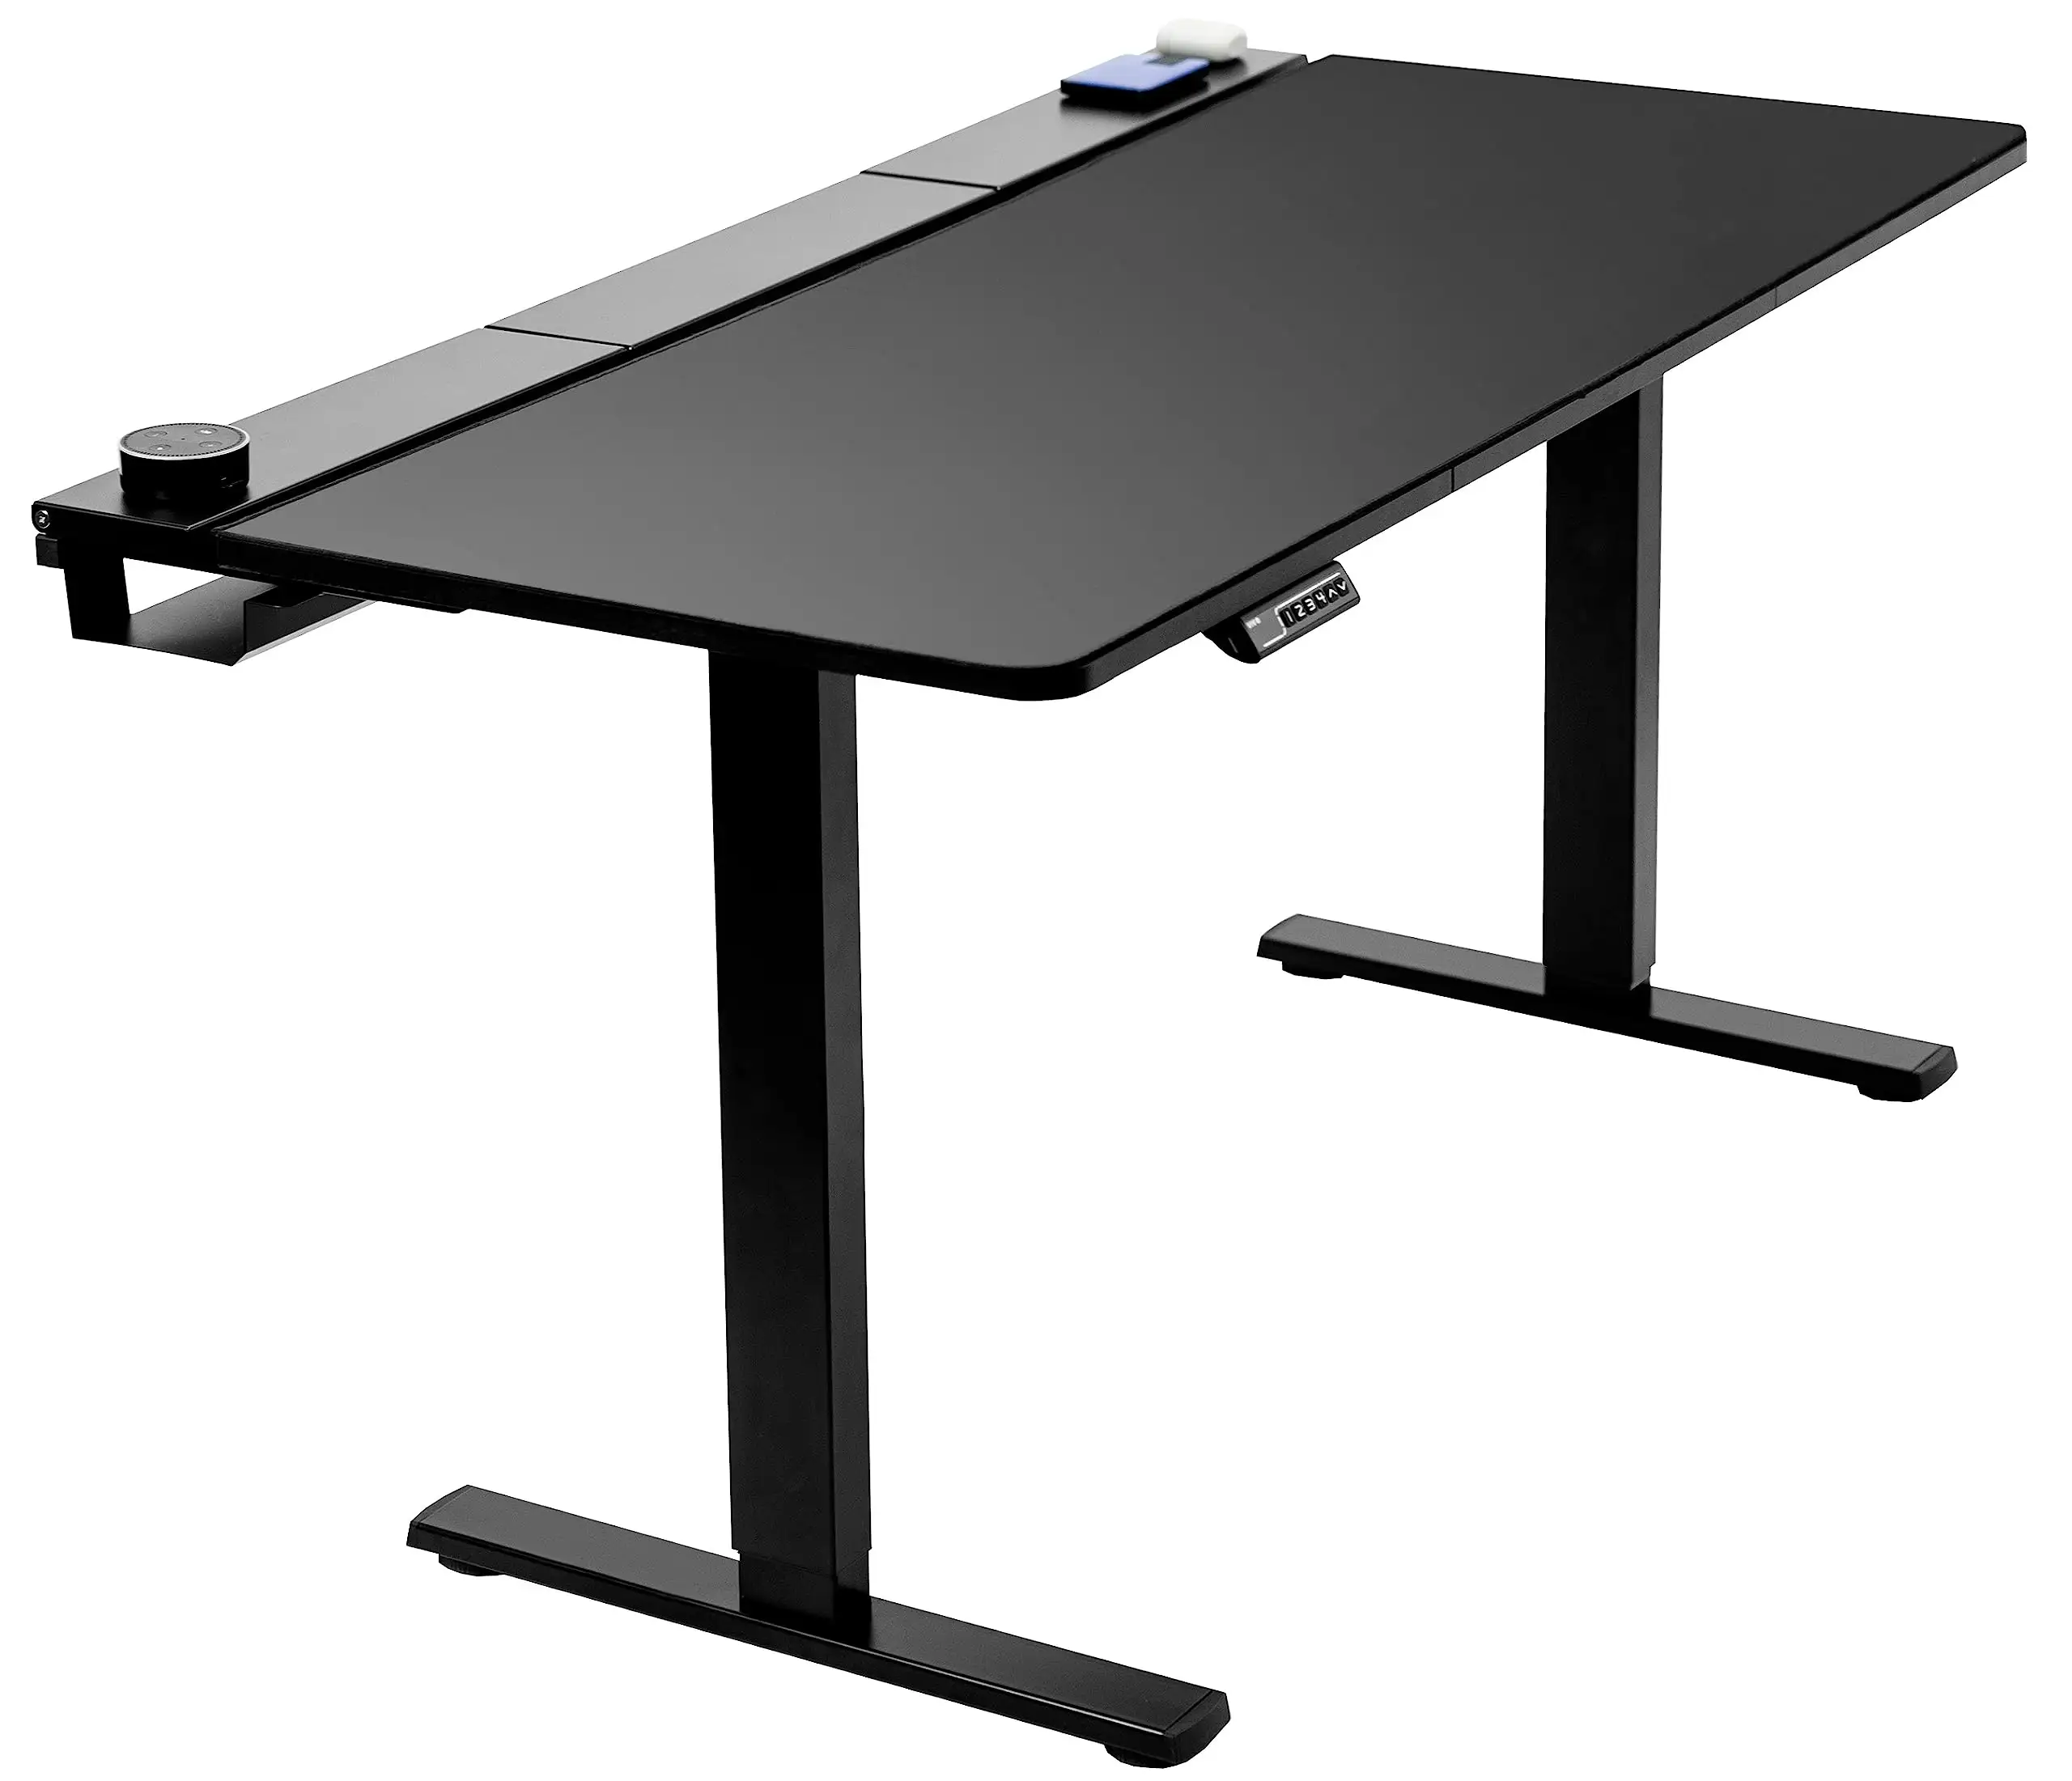 Venta al por mayor de nuevas características Altura de escritorio eléctrica ajustable, bandeja de cable oculta incorporada y almohadilla de tamaño completo, marco negro